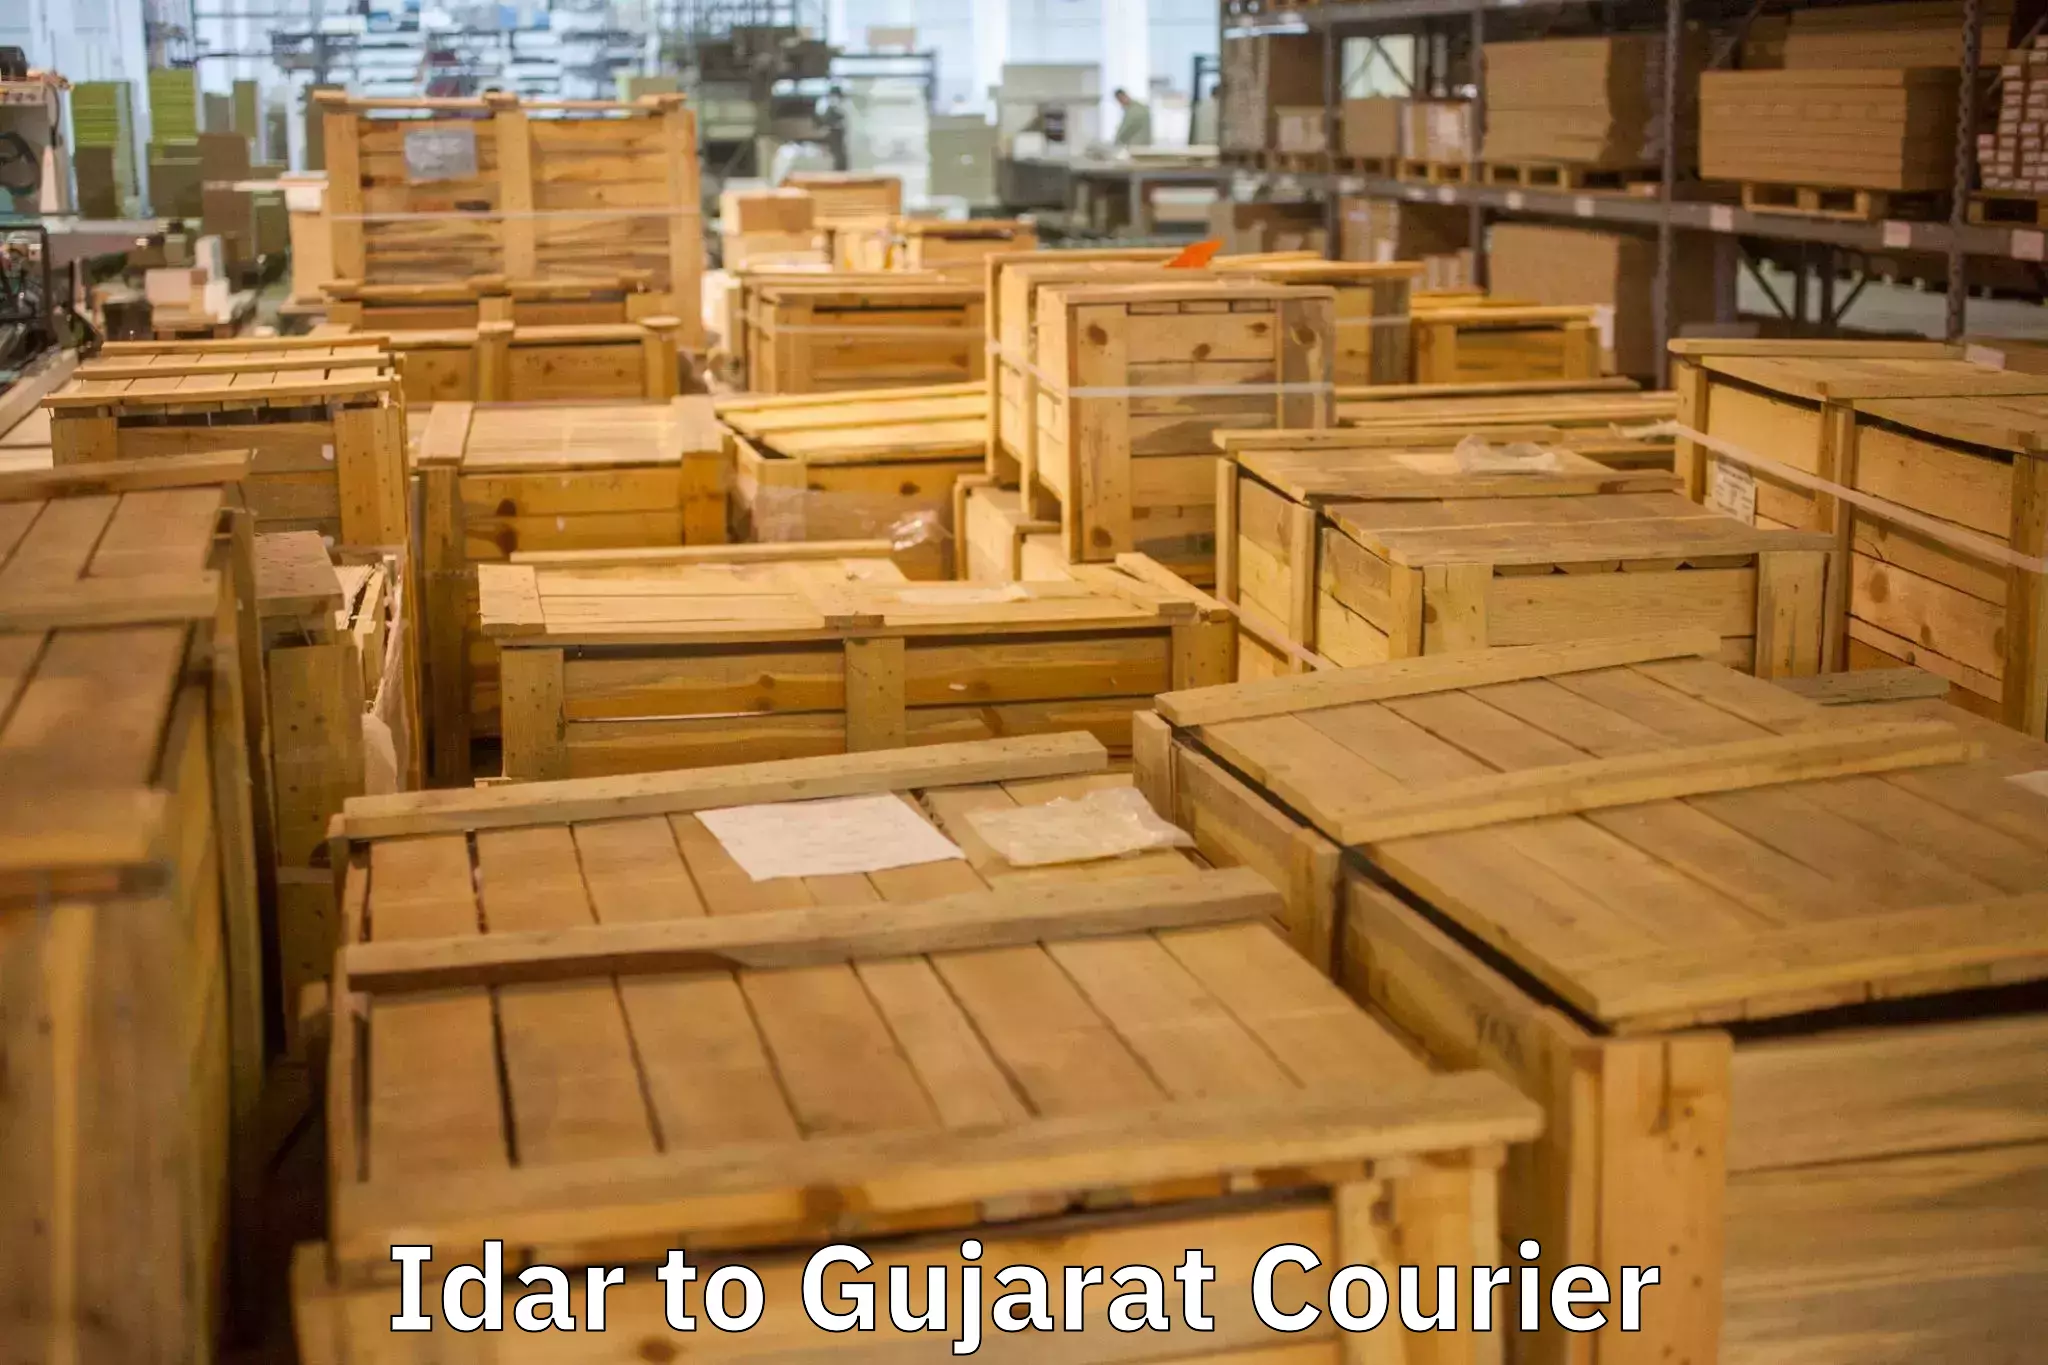 Furniture moving experts Idar to Gujarat